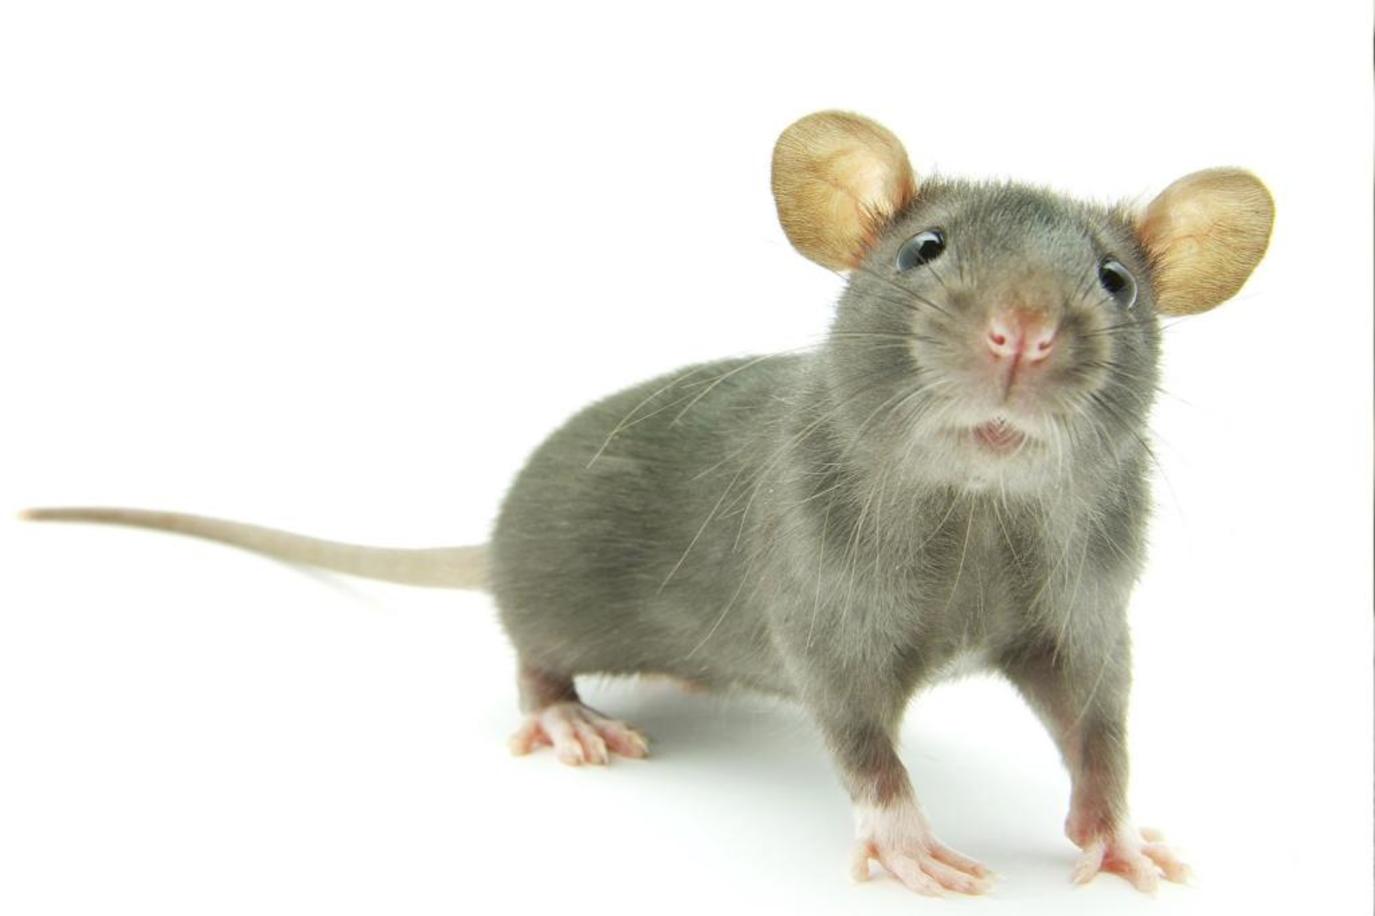 Dudziro yekuona grey mouse muchiroto